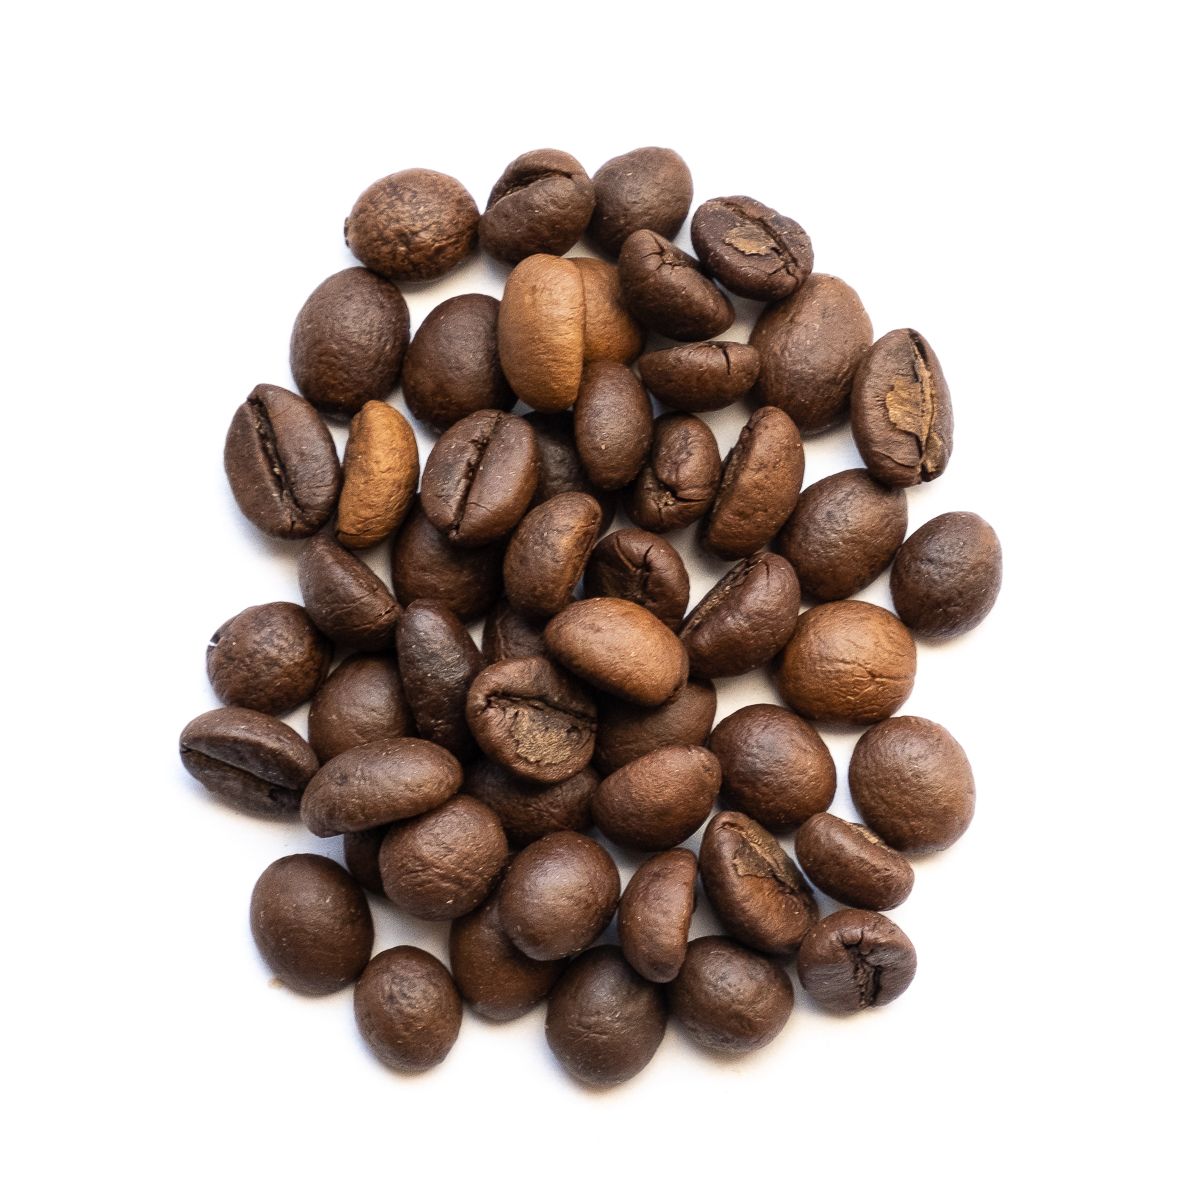 Etiopie Djmimah Gr. 5, unwashed 100% arabika 1000g - KK000801-03 1000g Orientcaffé káva